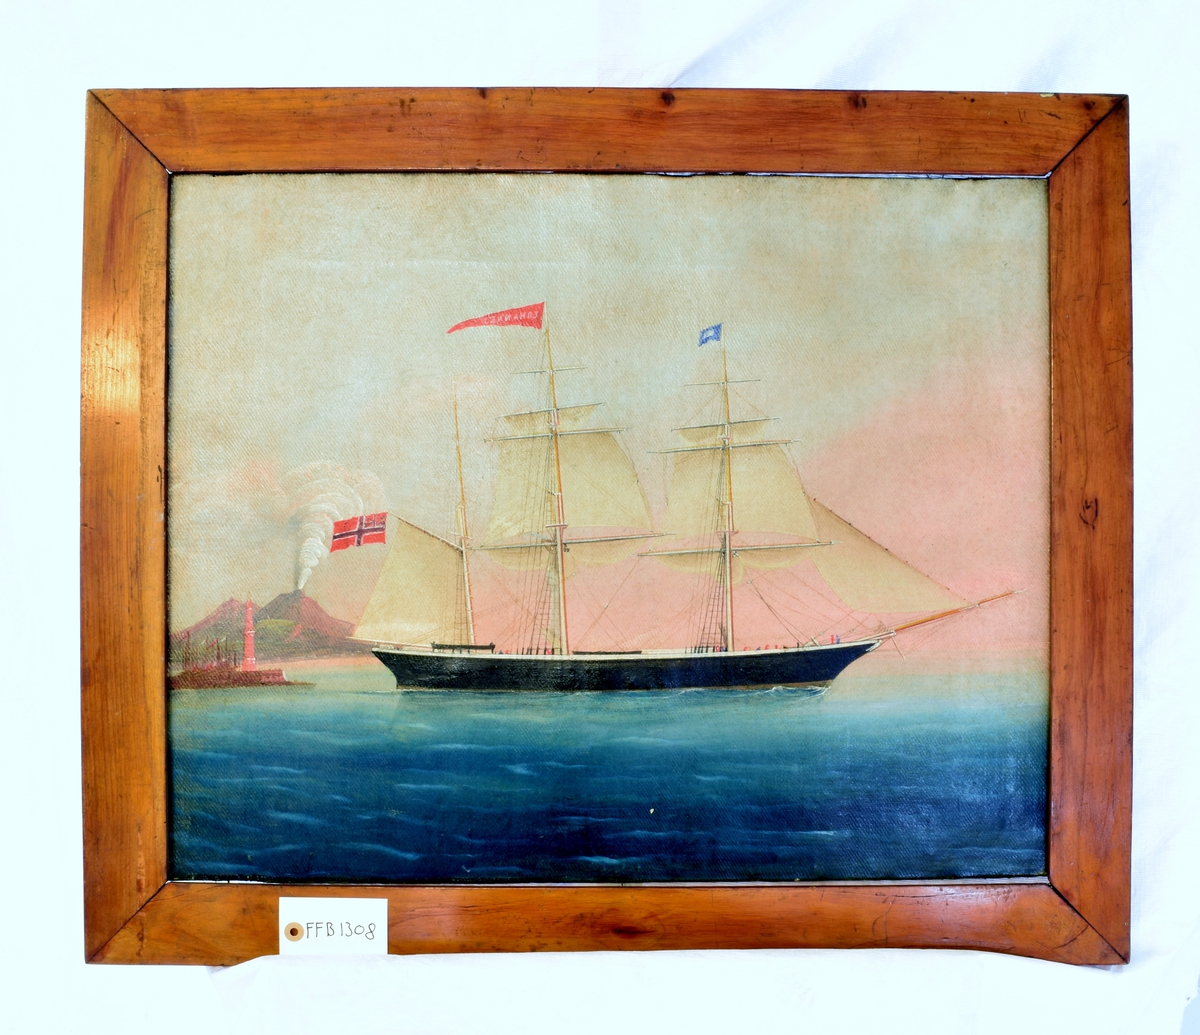 SKutebilde av barken "Johannes". Seilskipet ble bygget ved Beers garveri i Tjørsvagstrand i 1861 og skal ha vært det største seilskipet som ble bygget i Flekkefjord. Det forliste i 1862.